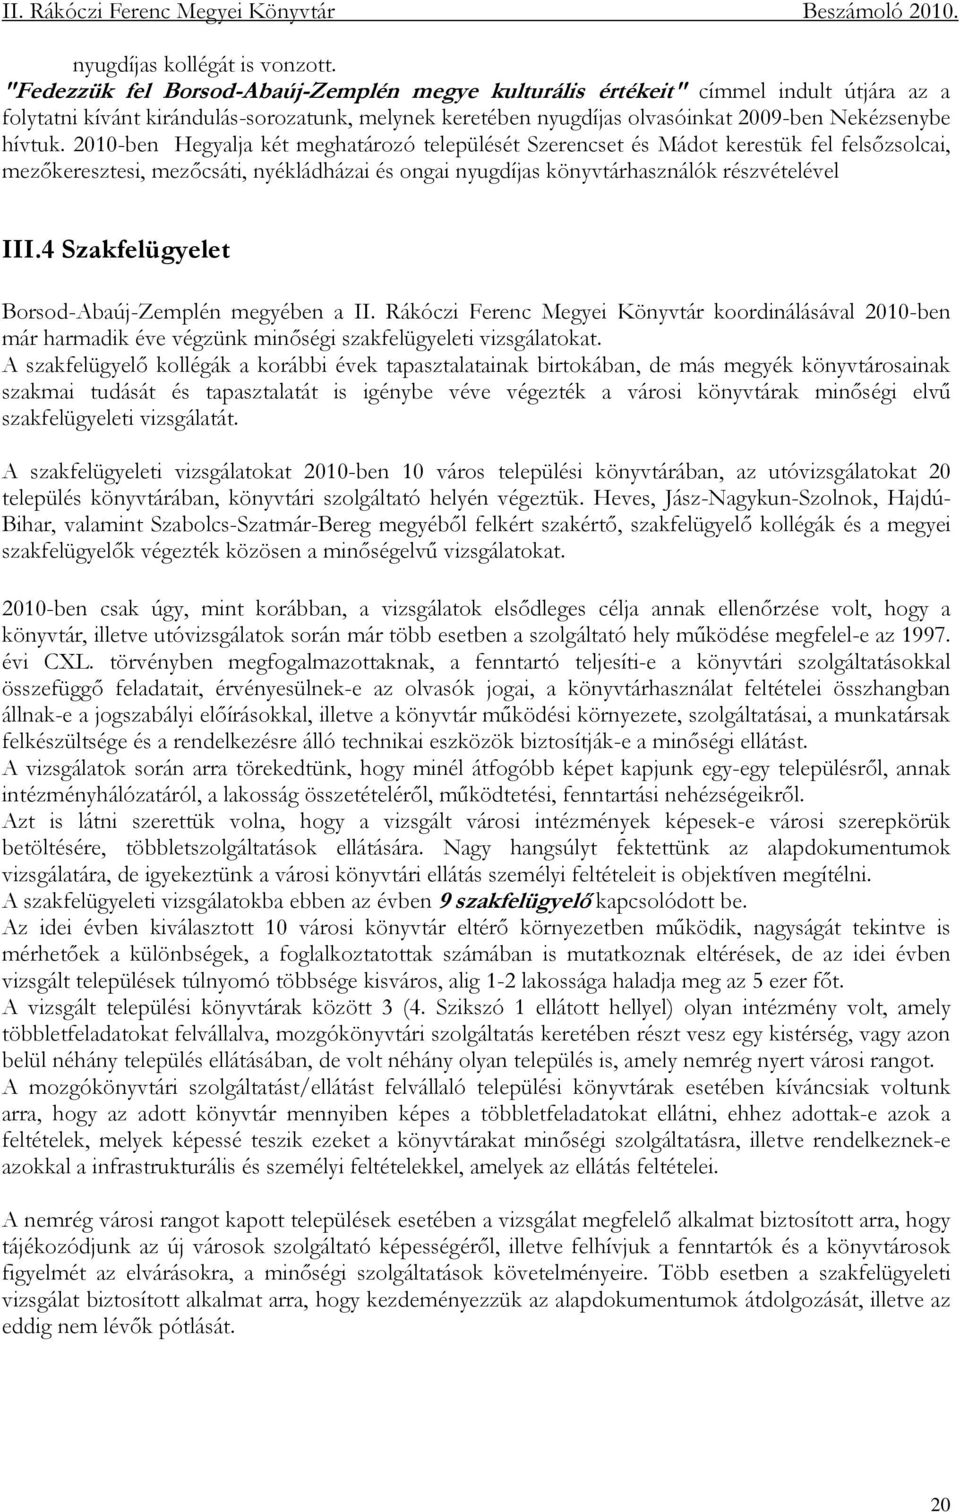 2010-ben Hegyalja két meghatározó települését Szerencset és Mádot kerestük fel felsızsolcai, mezıkeresztesi, mezıcsáti, nyékládházai és ongai nyugdíjas könyvtárhasználók részvételével III.